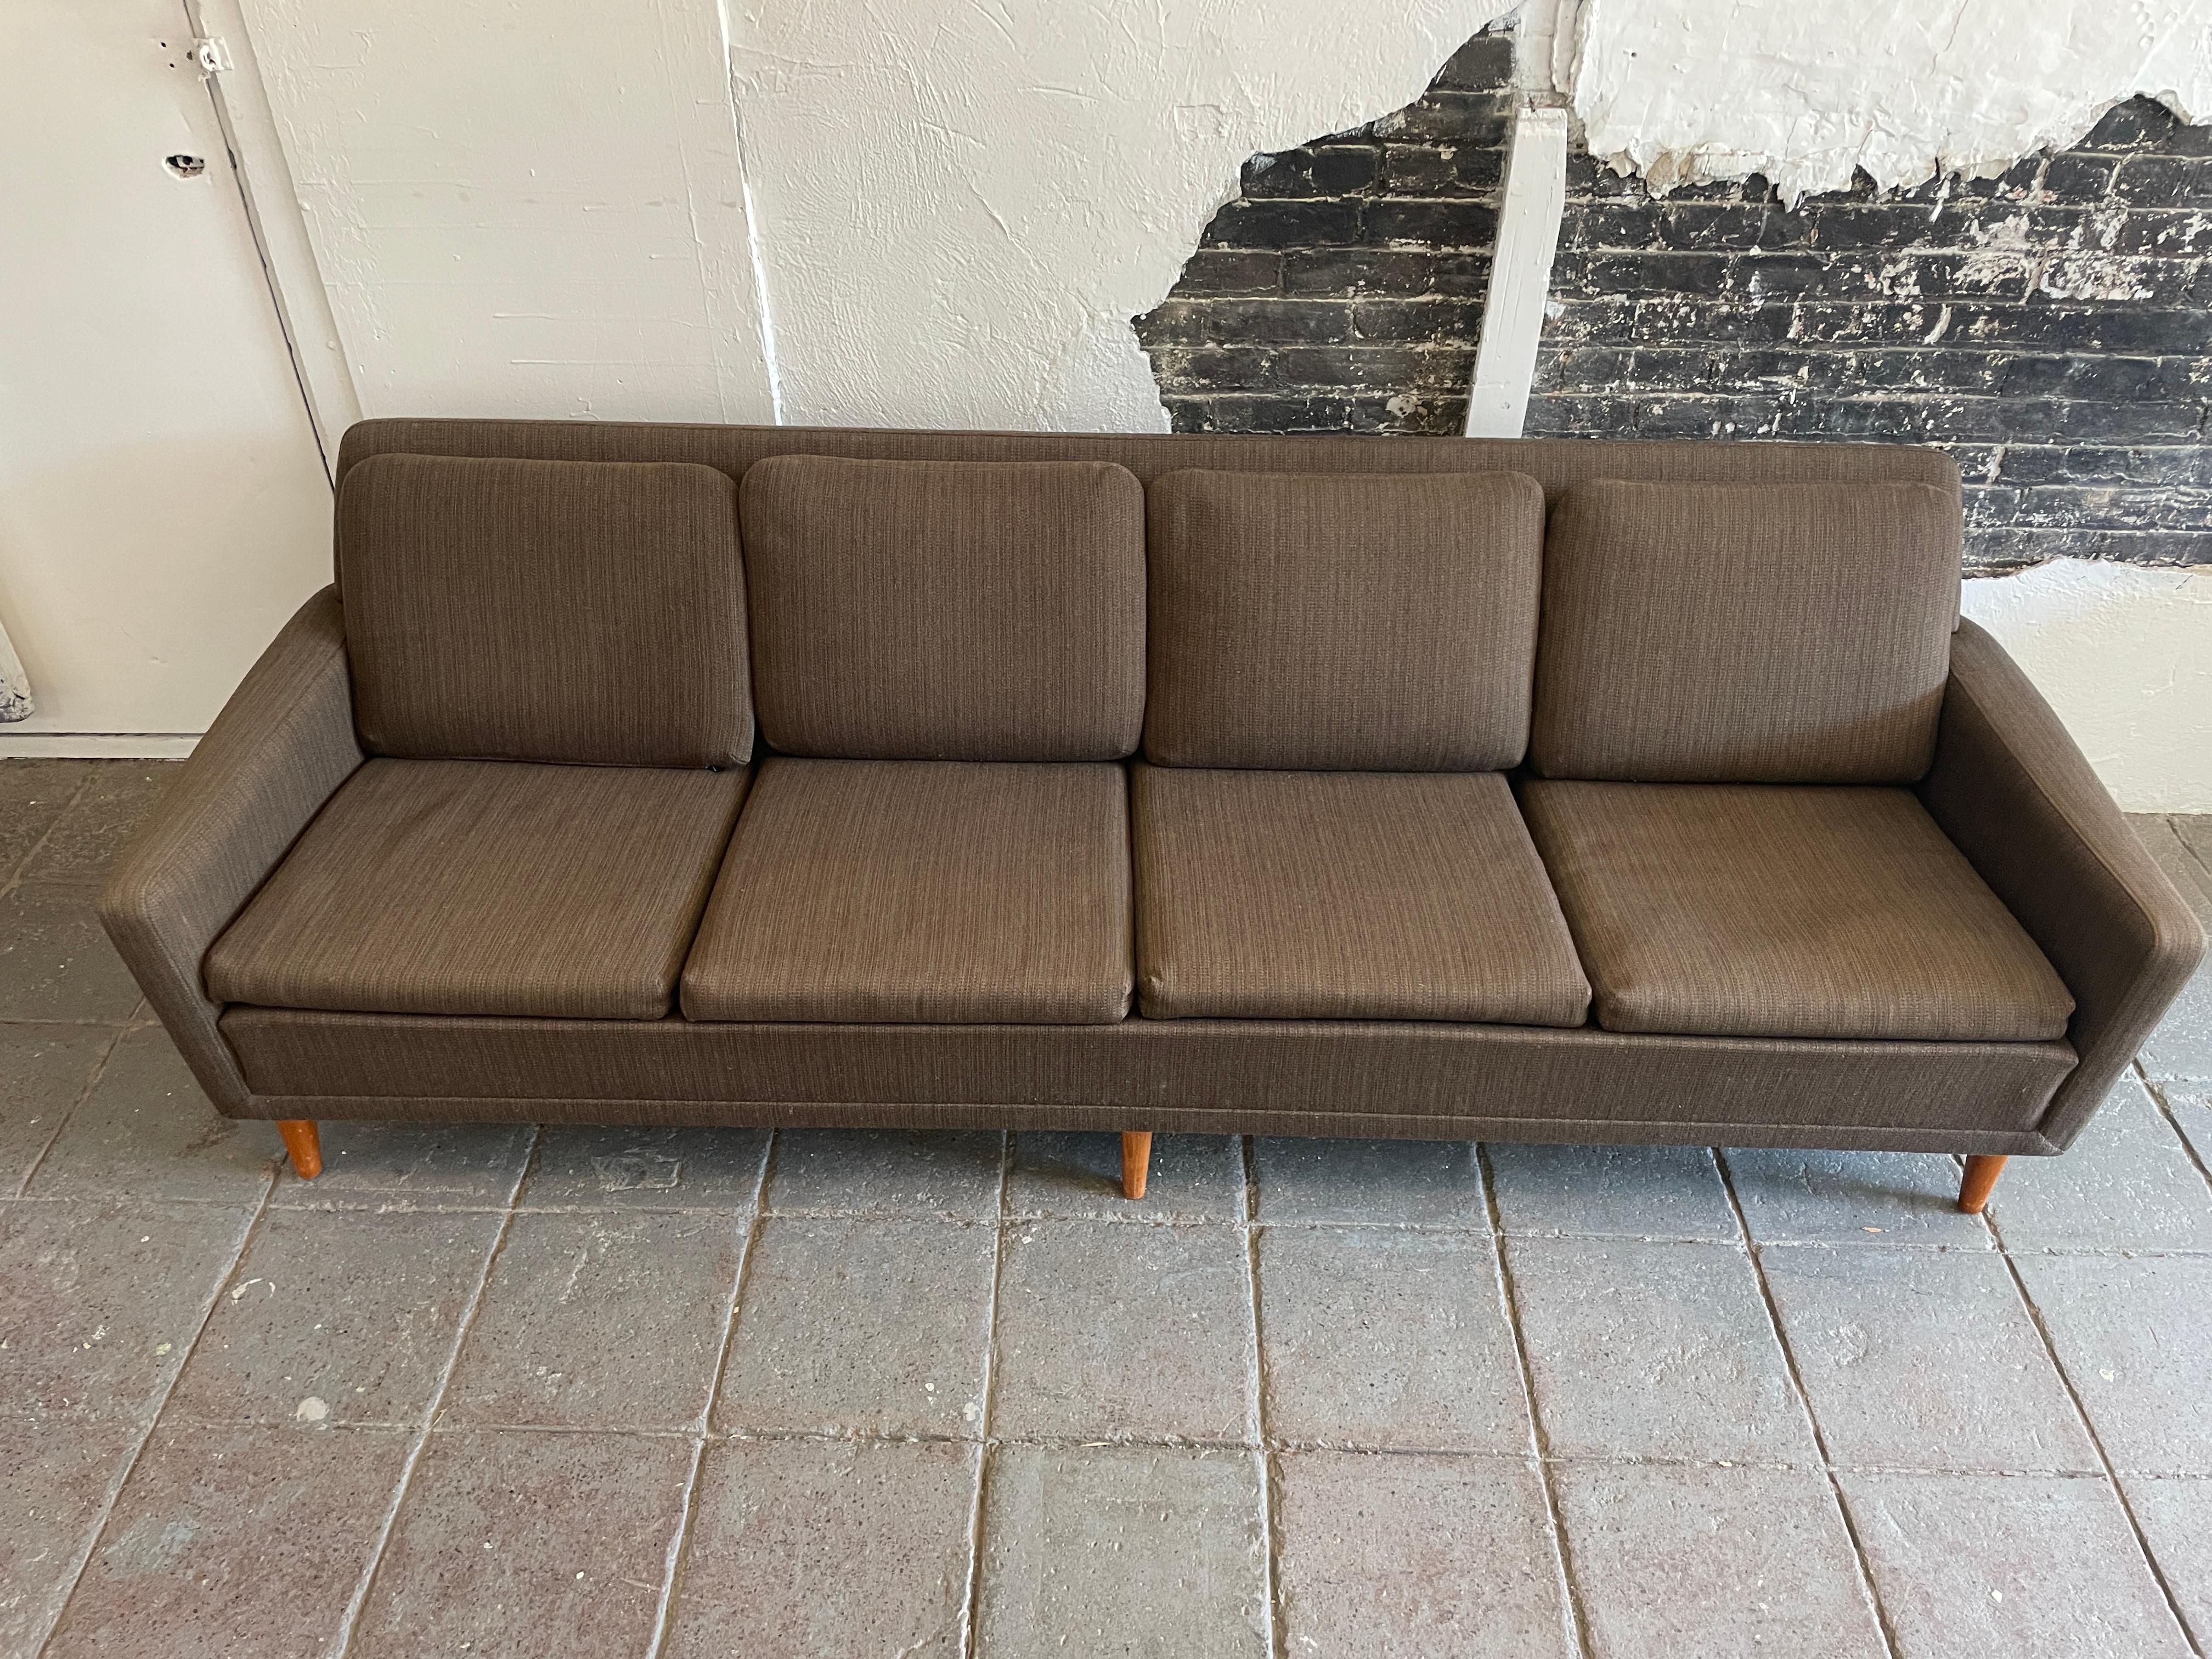 The Modern Scandinavian Mid-century low 4 seat sofa couch by DUX in original Dark Brown woven wool upholstery with solid teak legs. Rembourrage d'origine des années 1960 en très bon état. Merveilleux design et très confortable. Très peu d'usure et